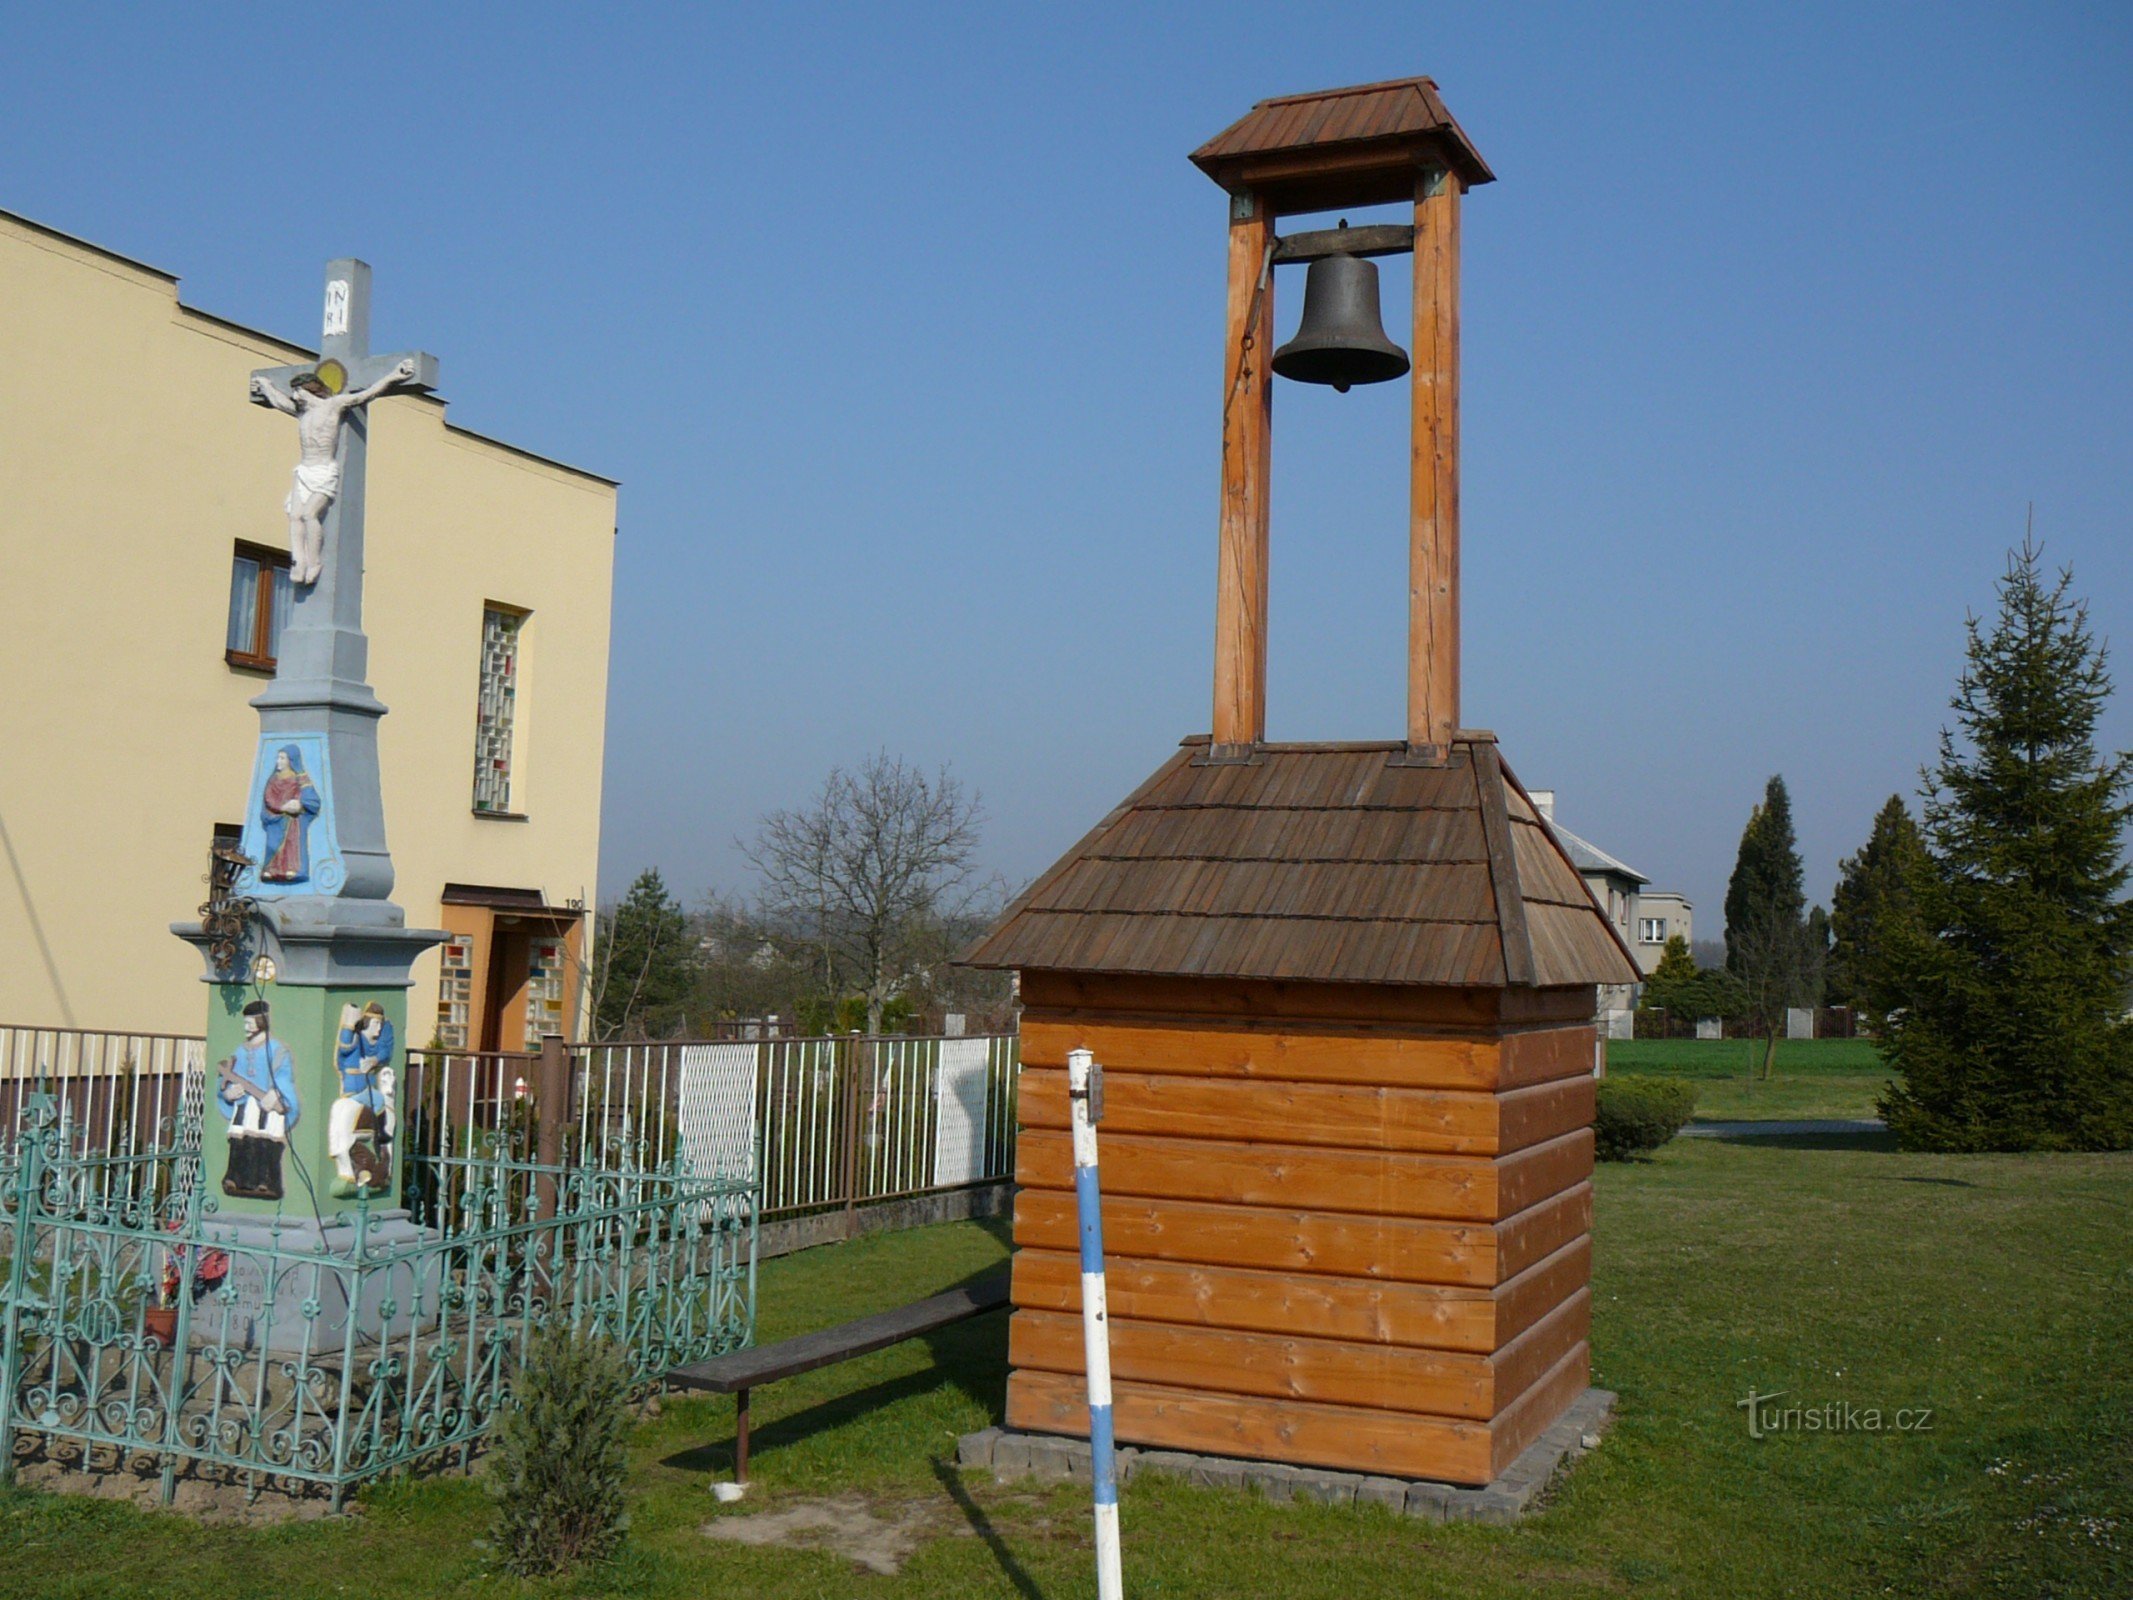 Tháp chuông Domaslav